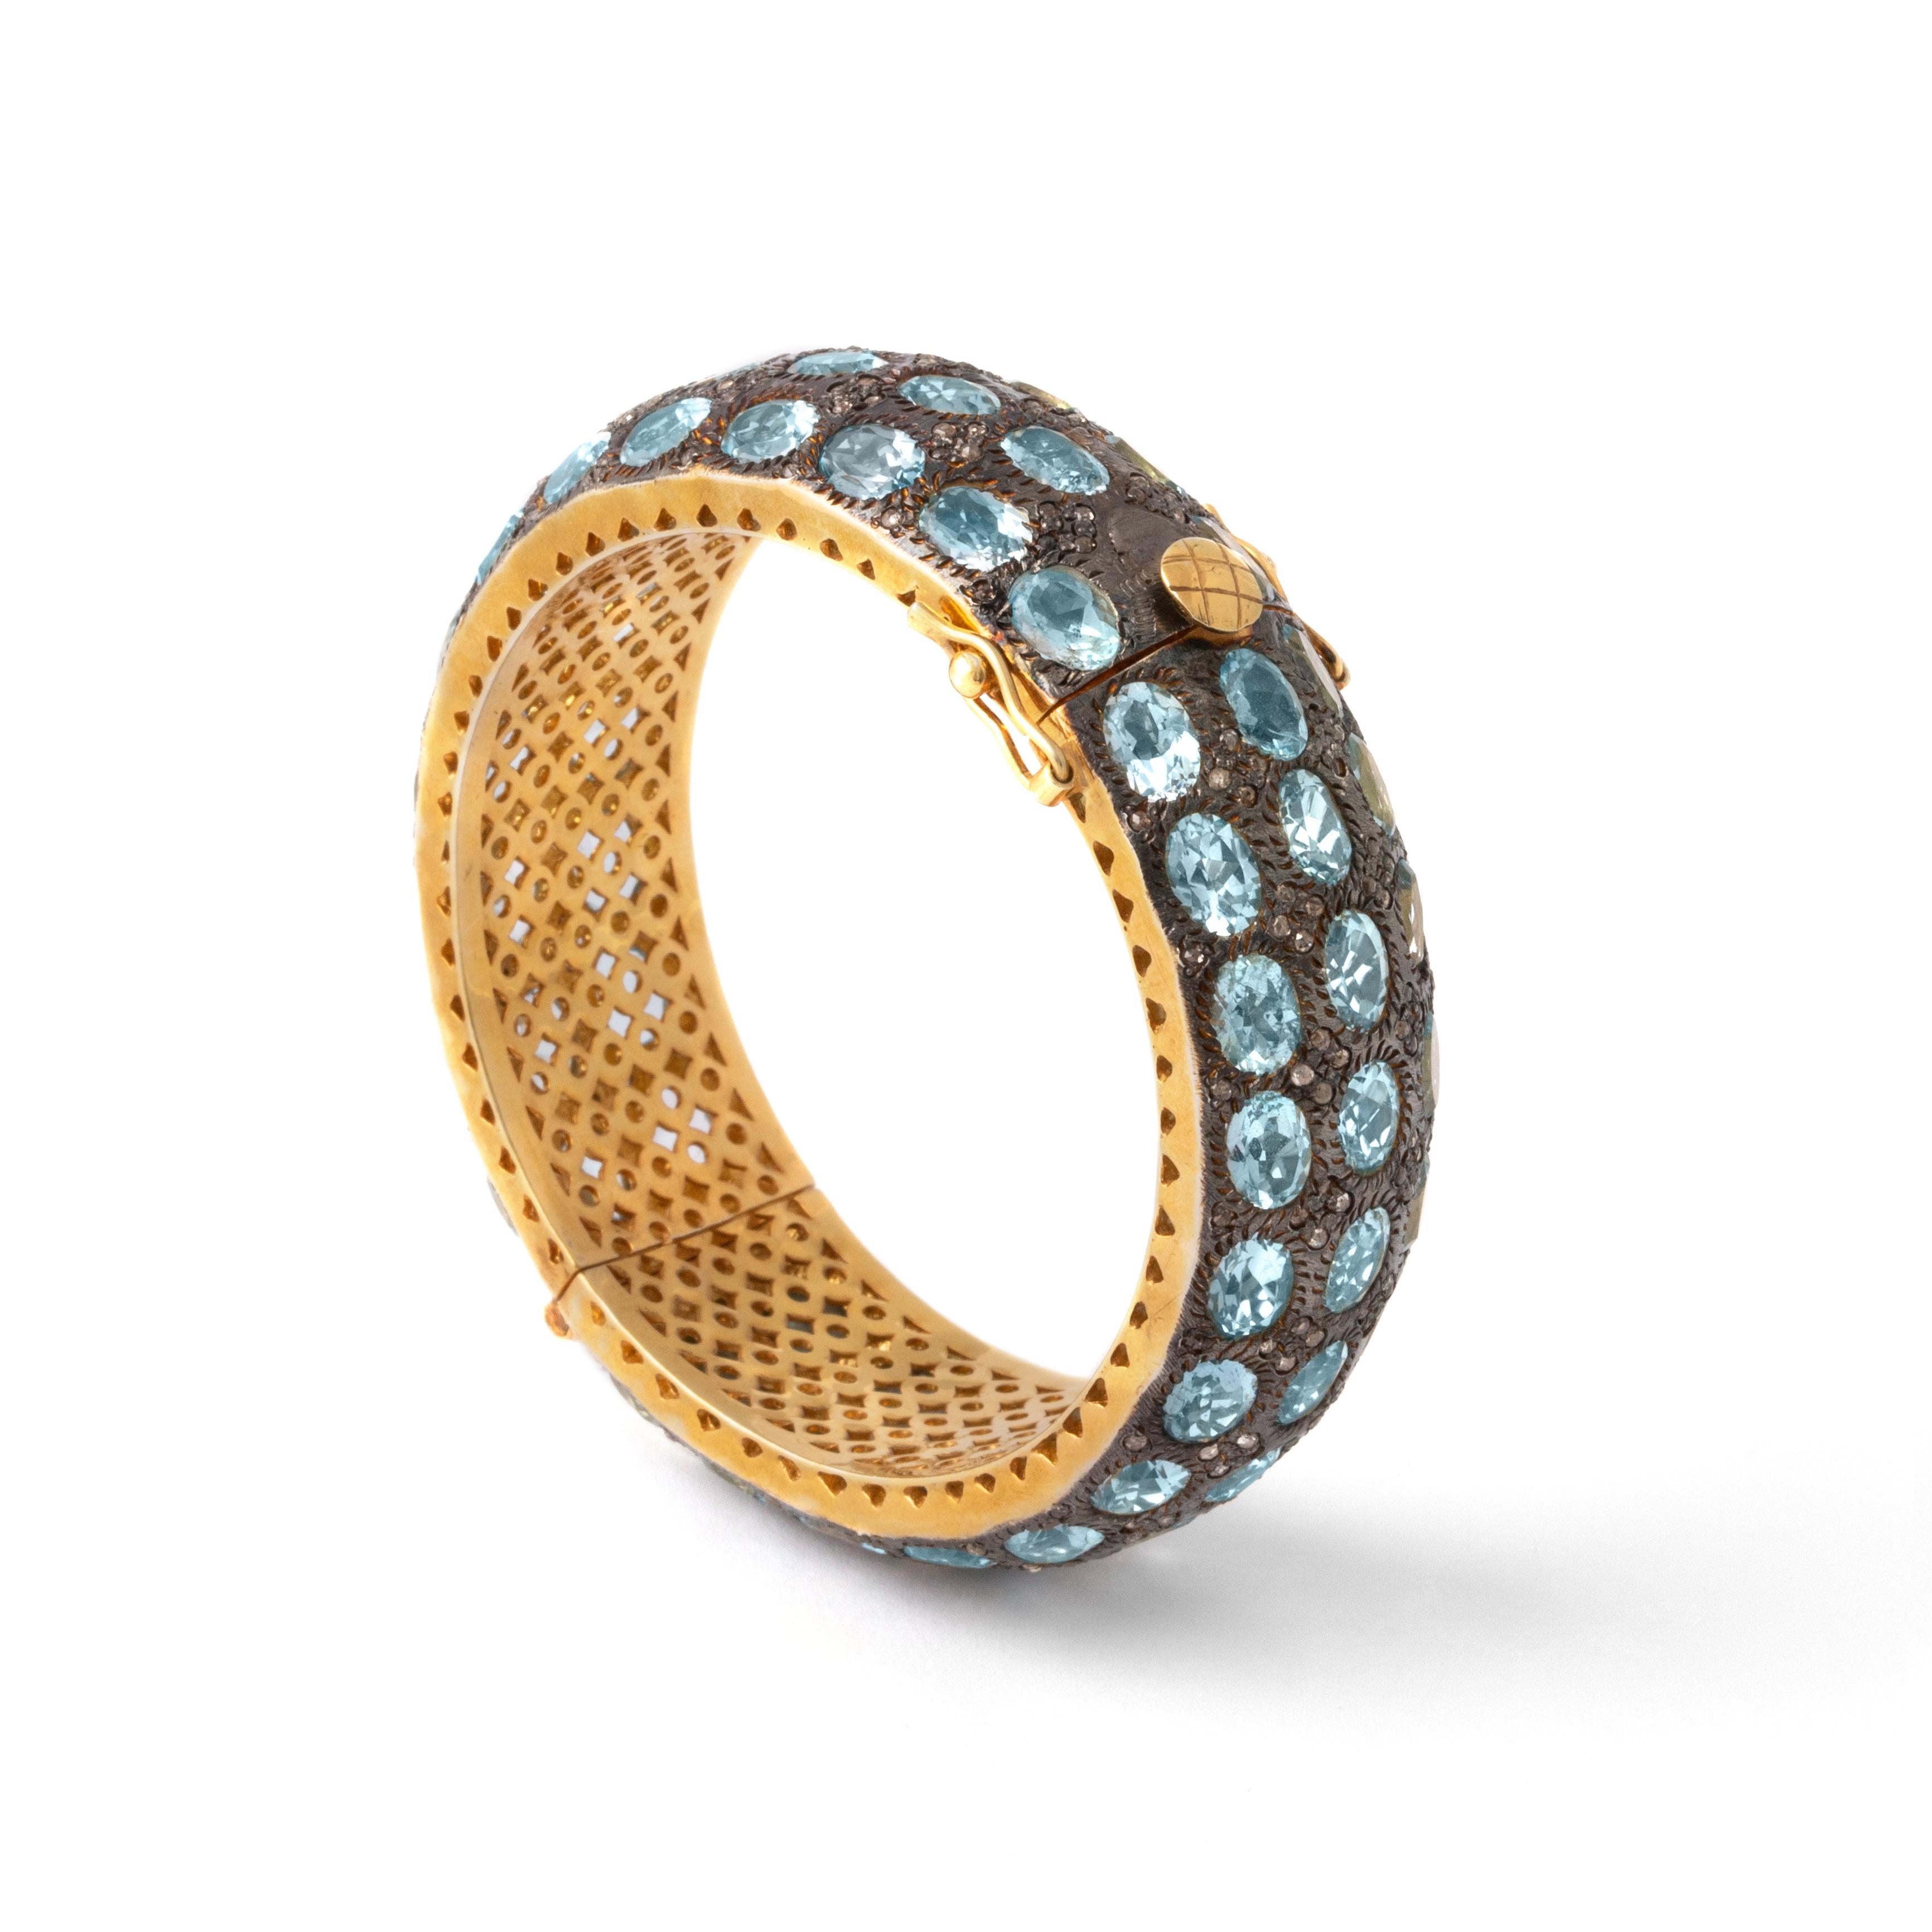 L'élégance s'allie à la sophistication dans notre bracelet en or orné d'aigue-marine, une incarnation étonnante d'un style raffiné.

Le point focal de cette pièce exquise est l'aigue-marine de taille ovale, qui rayonne d'une teinte bleue tranquille